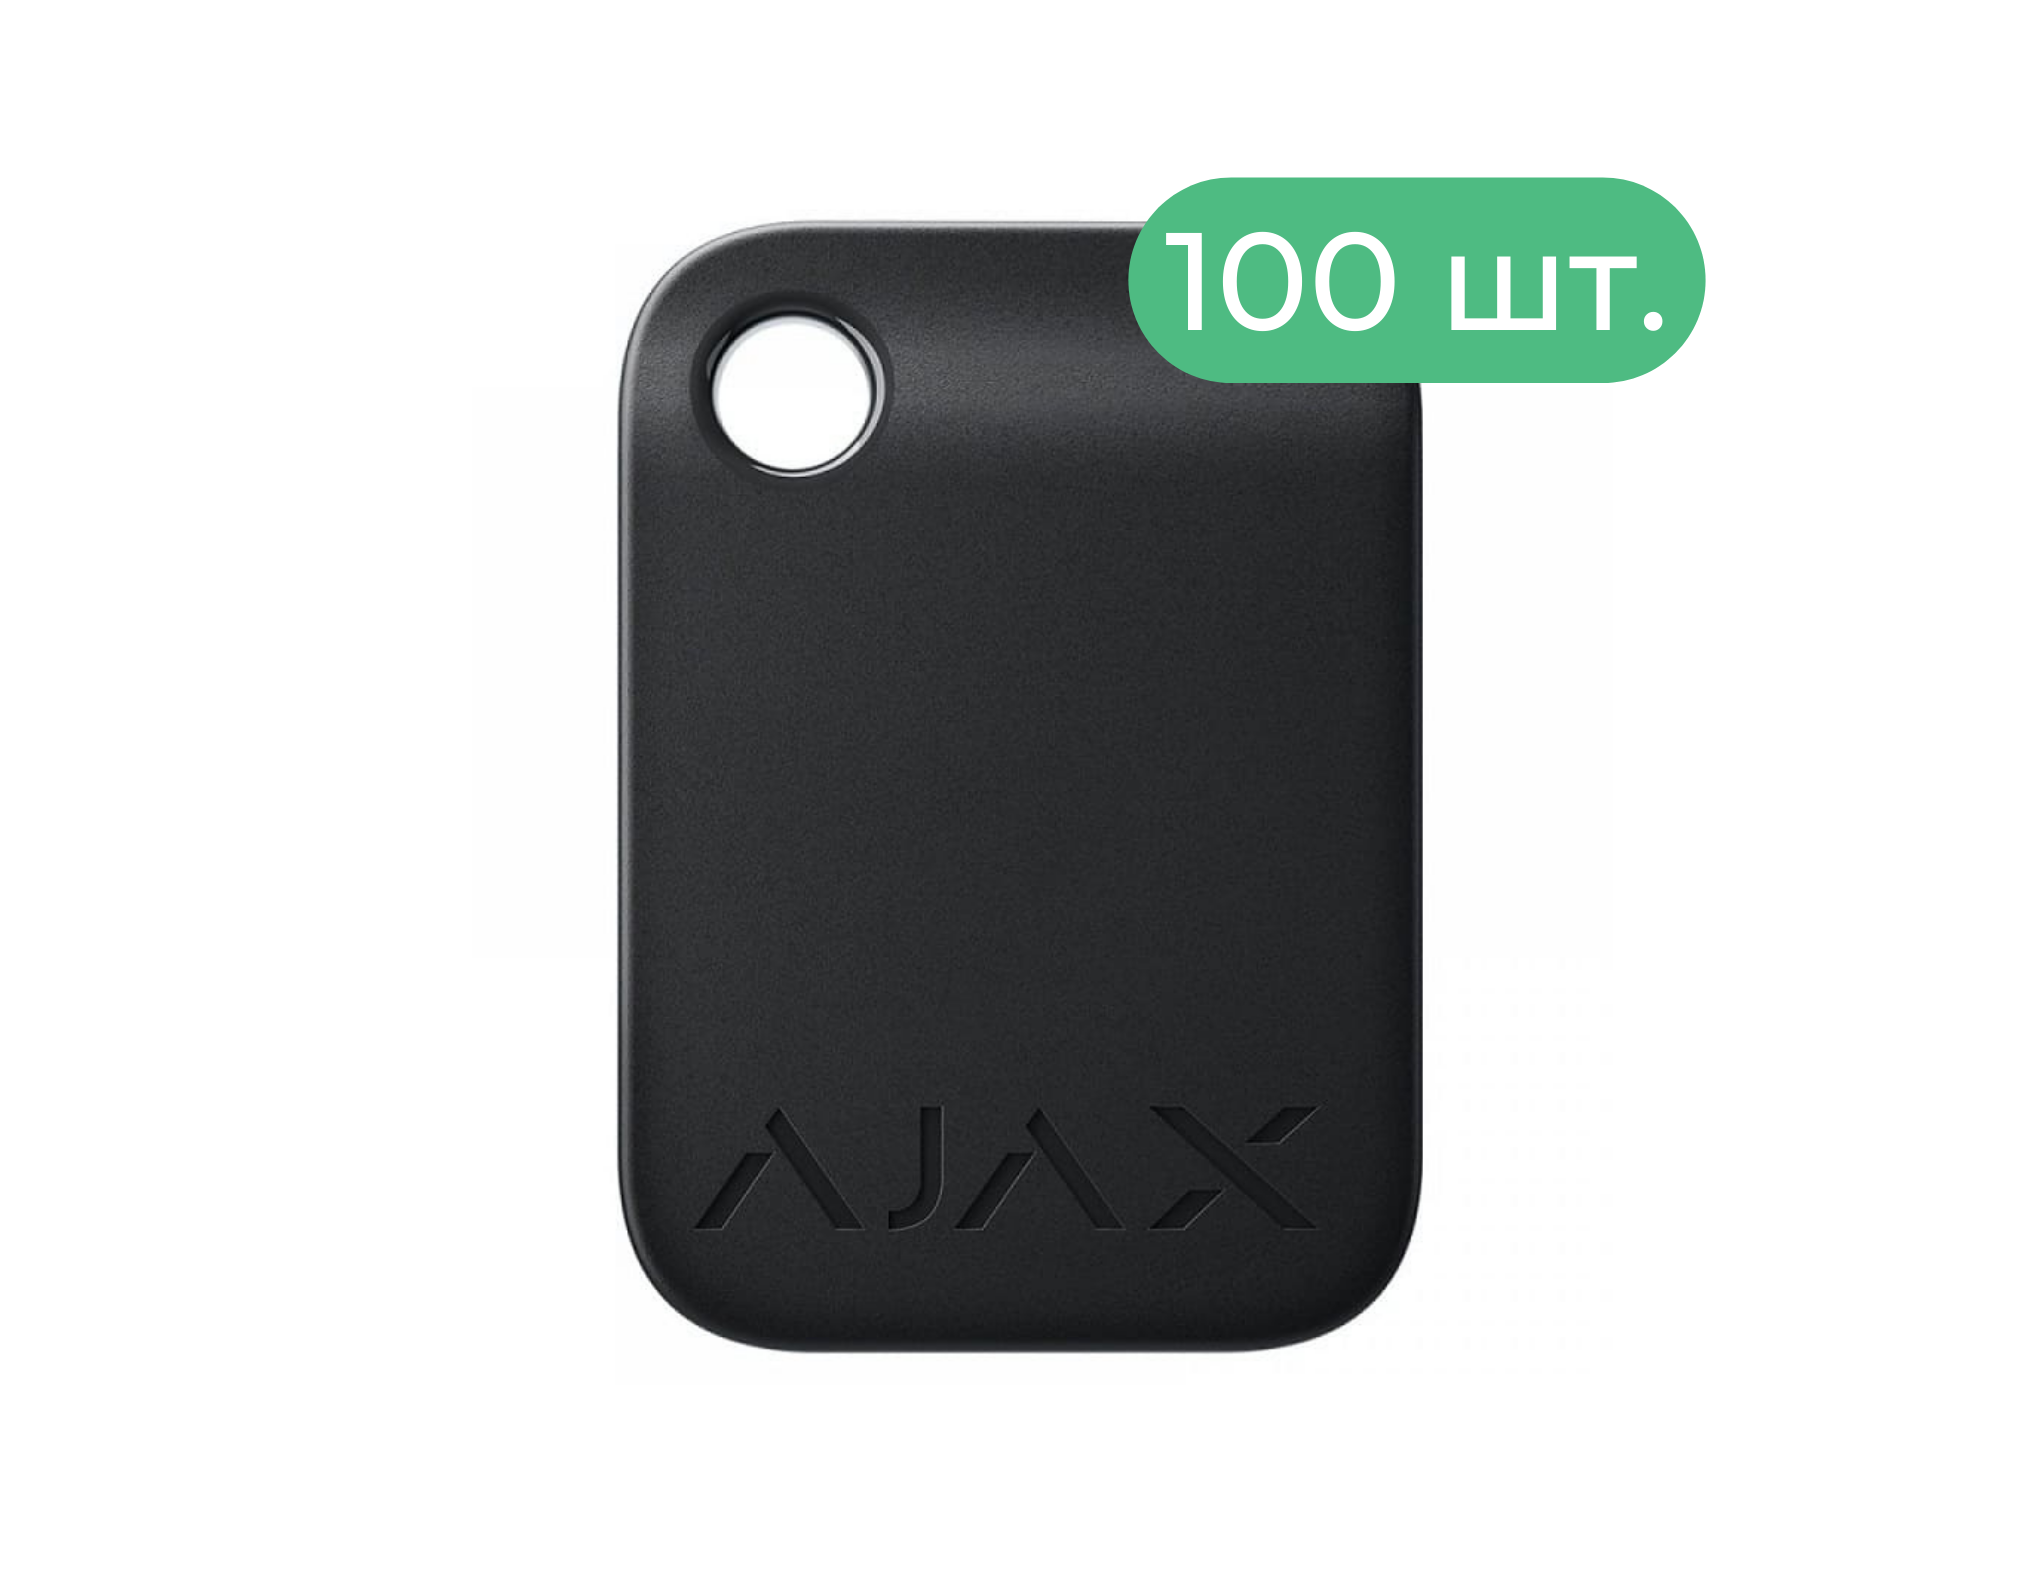 Tag черный (комплект 100 шт.) Защищенный бесконтактный брелок для клавиатуры